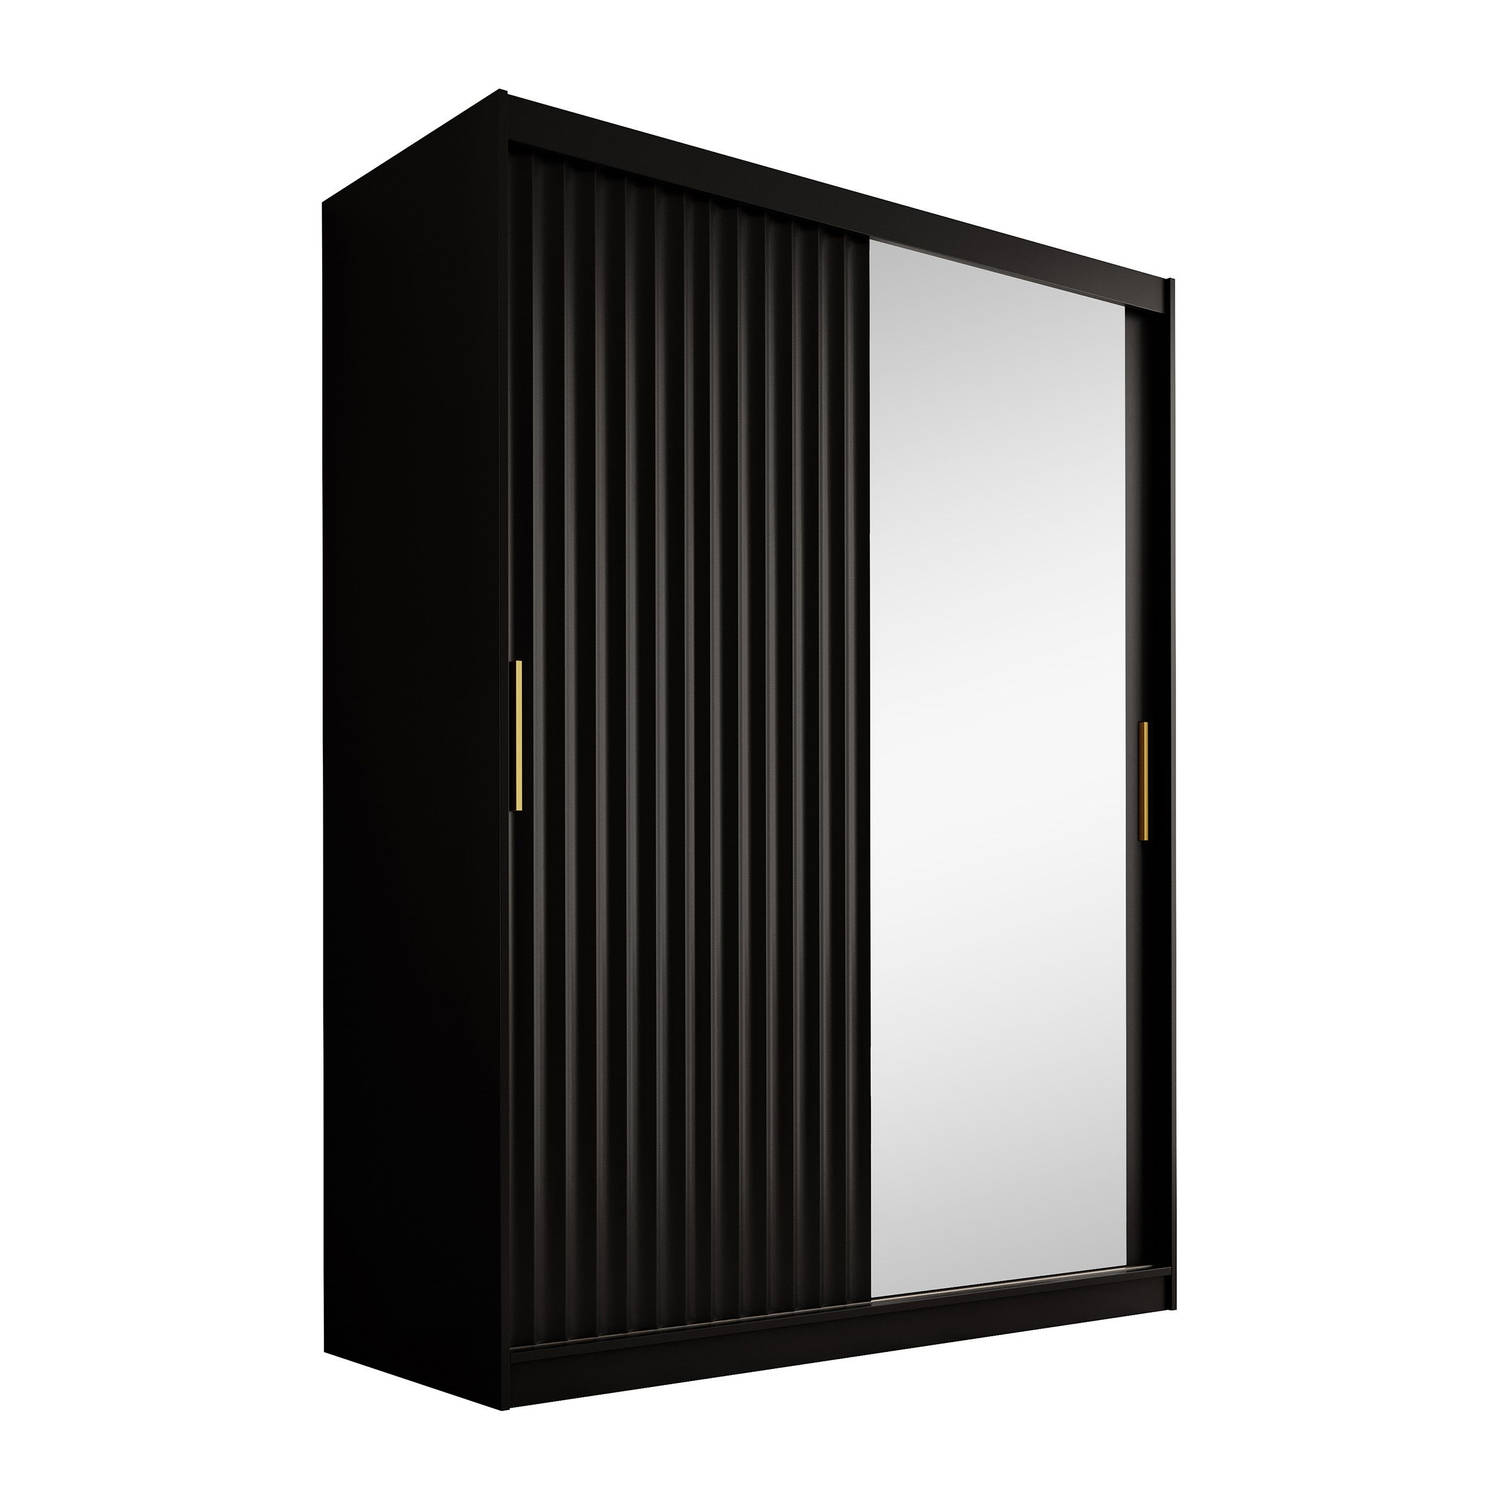 Meubella - Kledingkast Wynn - Mat zwart - 150 cm - Met spiegel